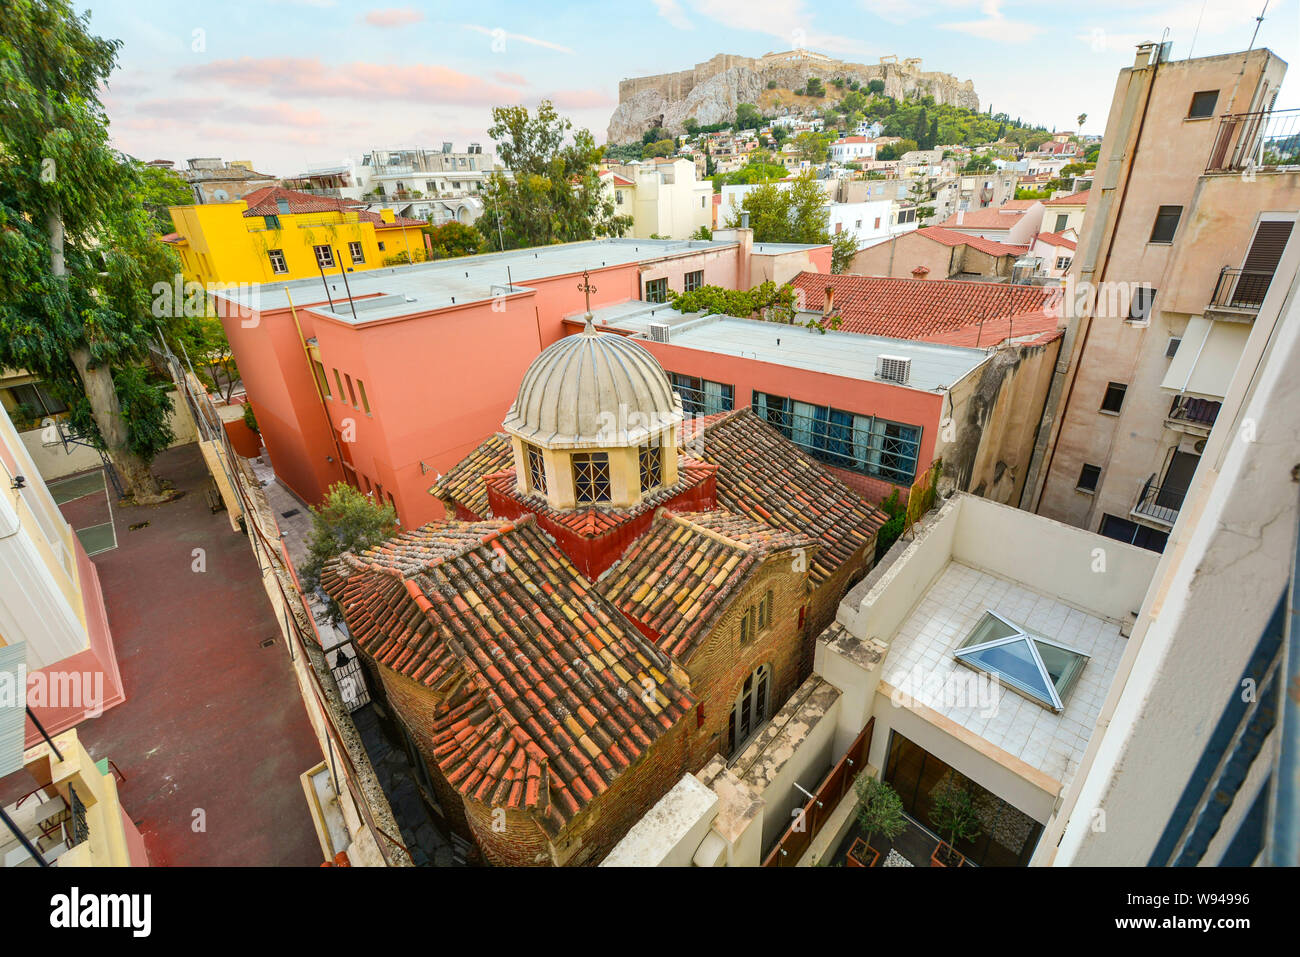 Un antica chiesa Greco Ortodossa è schiacciato tra più edifici moderni nel centro storico di Atene, Grecia, con Acropoli collina alle spalle. Foto Stock